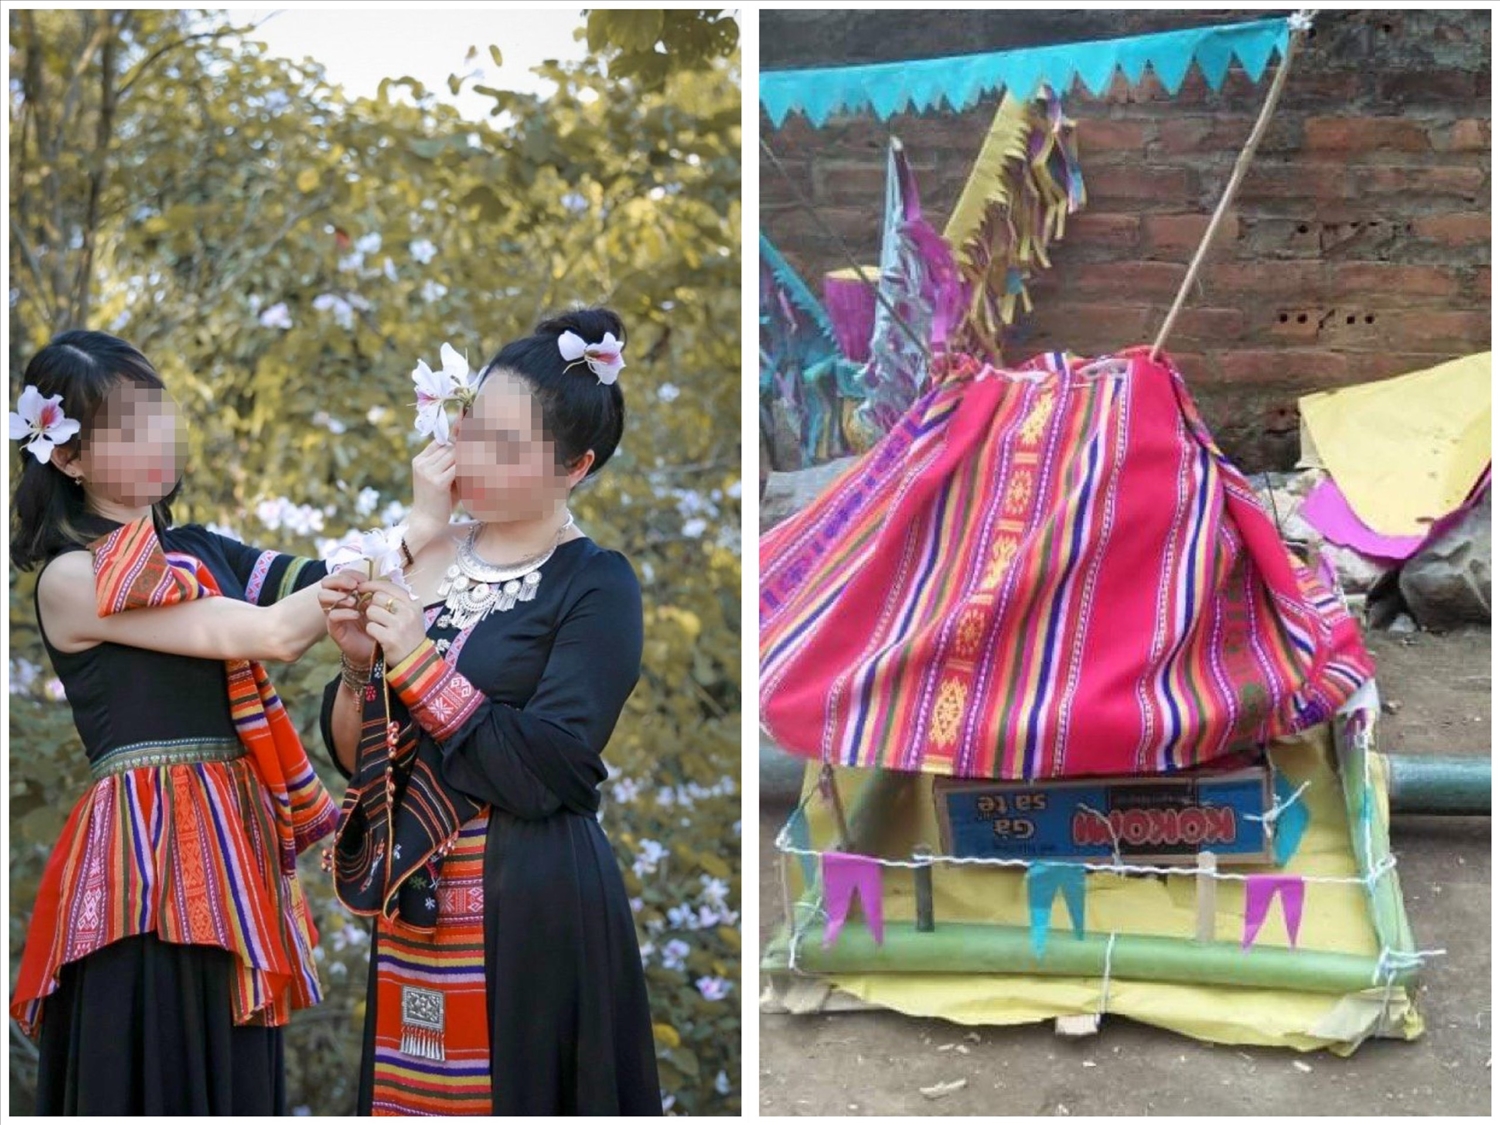 Trang phục cách tân (ảnh bên trái) sử dụng thổ cẩm đỏ mà theo nhiều người Thái có phần giống với những mẫu vải được sử dụng trong đám tang, nhà mồ (ảnh bên phải)